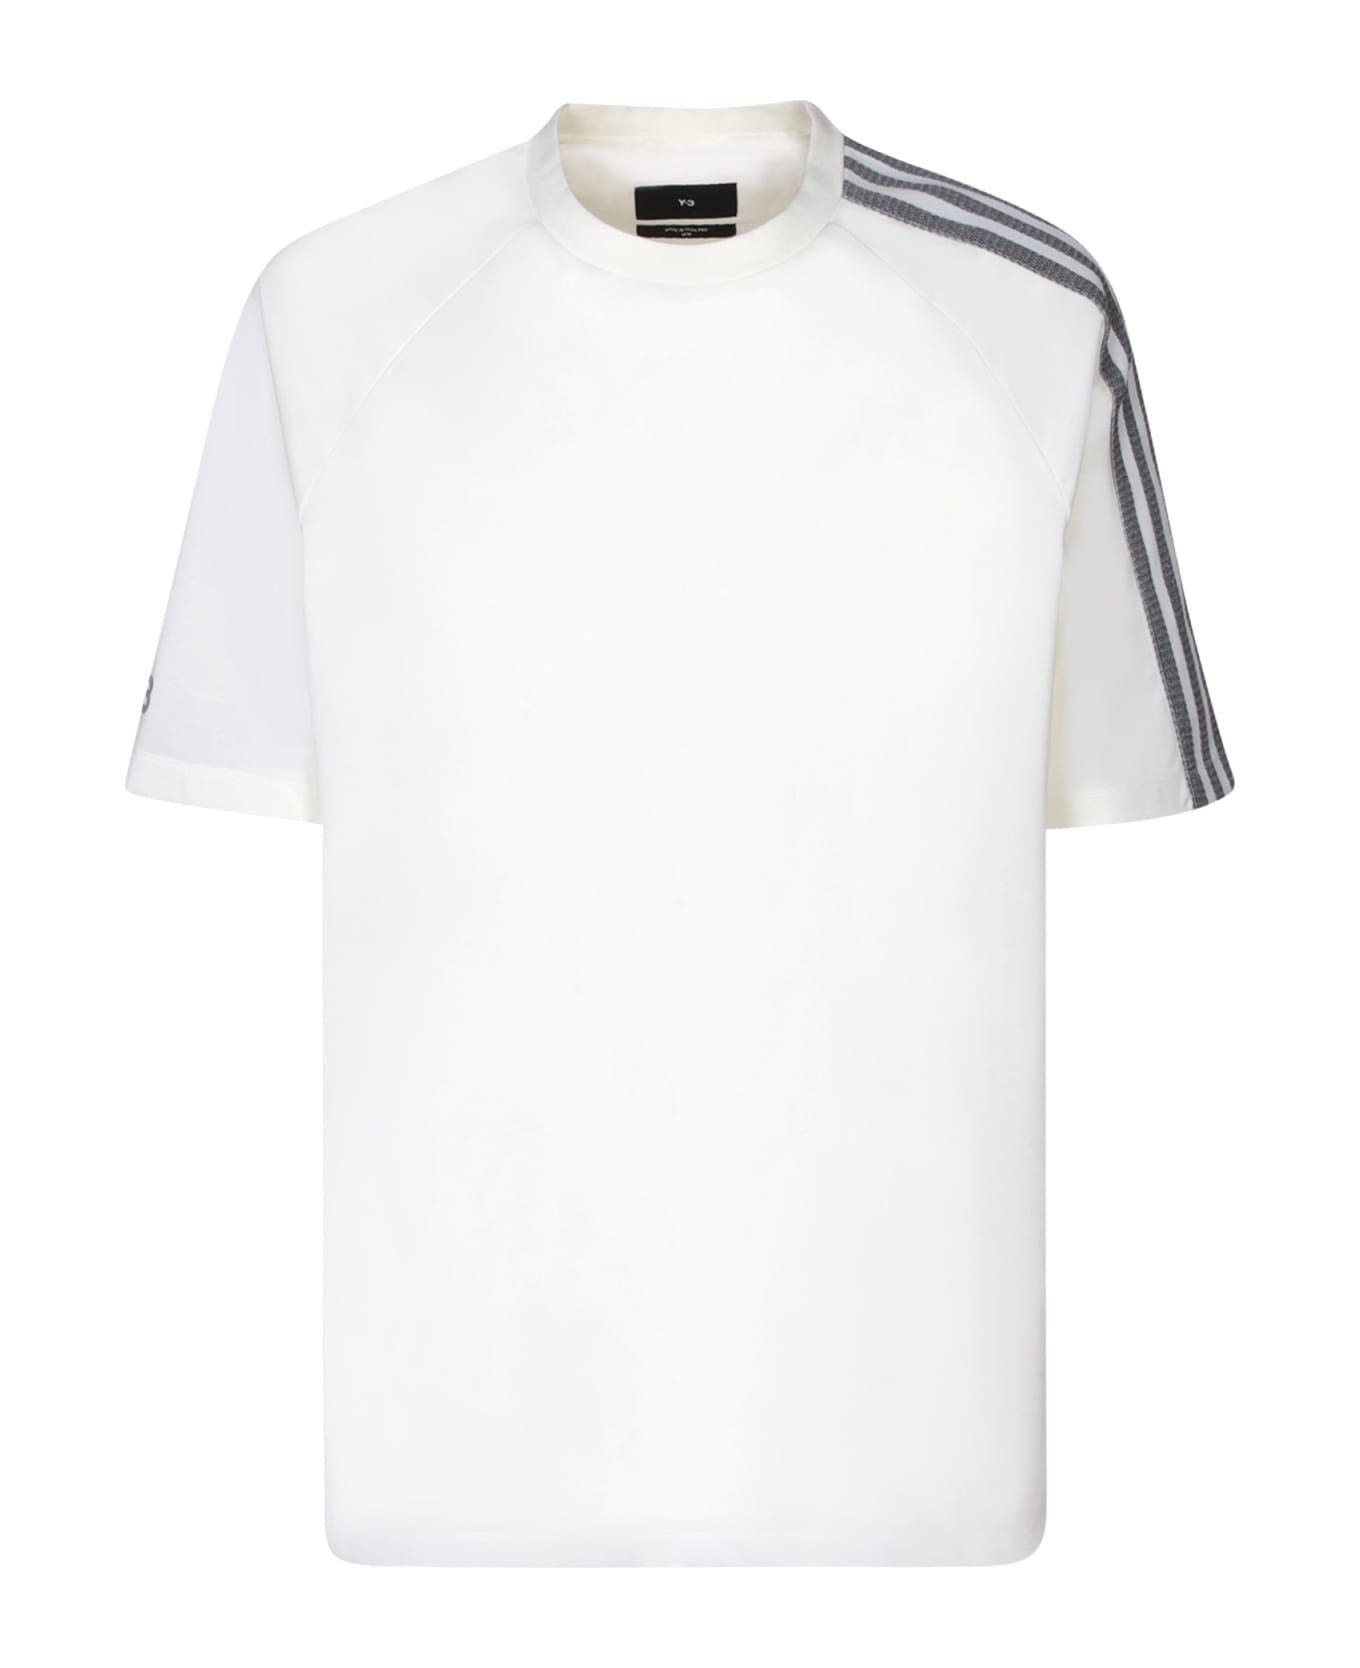 Y-3 Adidas Y-3 3s White T-shirt - White シャツ